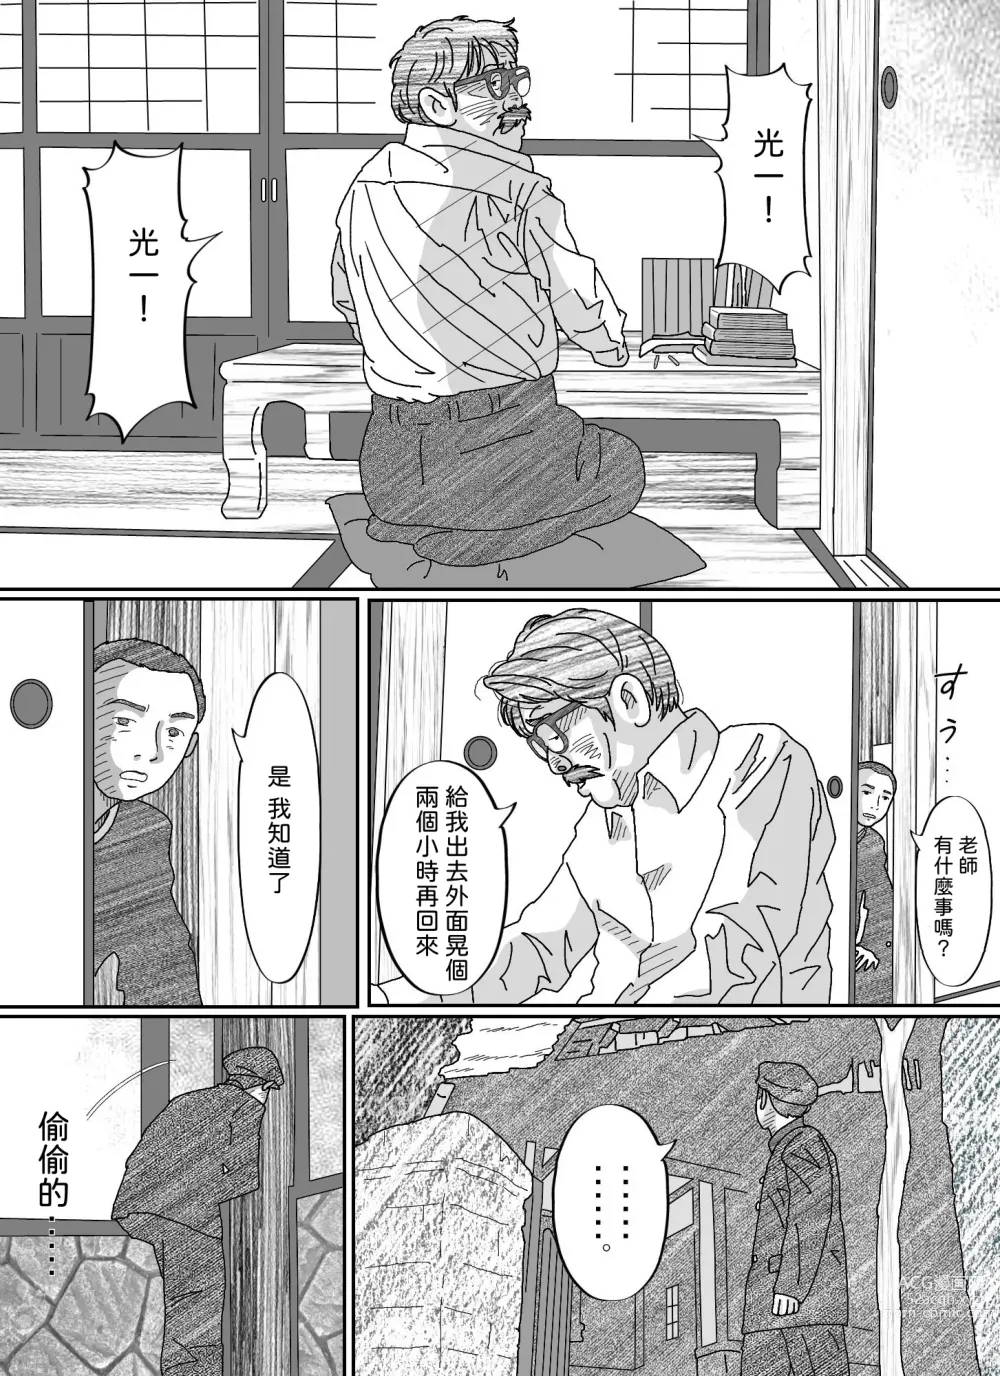 Page 24 of doujinshi Youzyo・ Kumiko